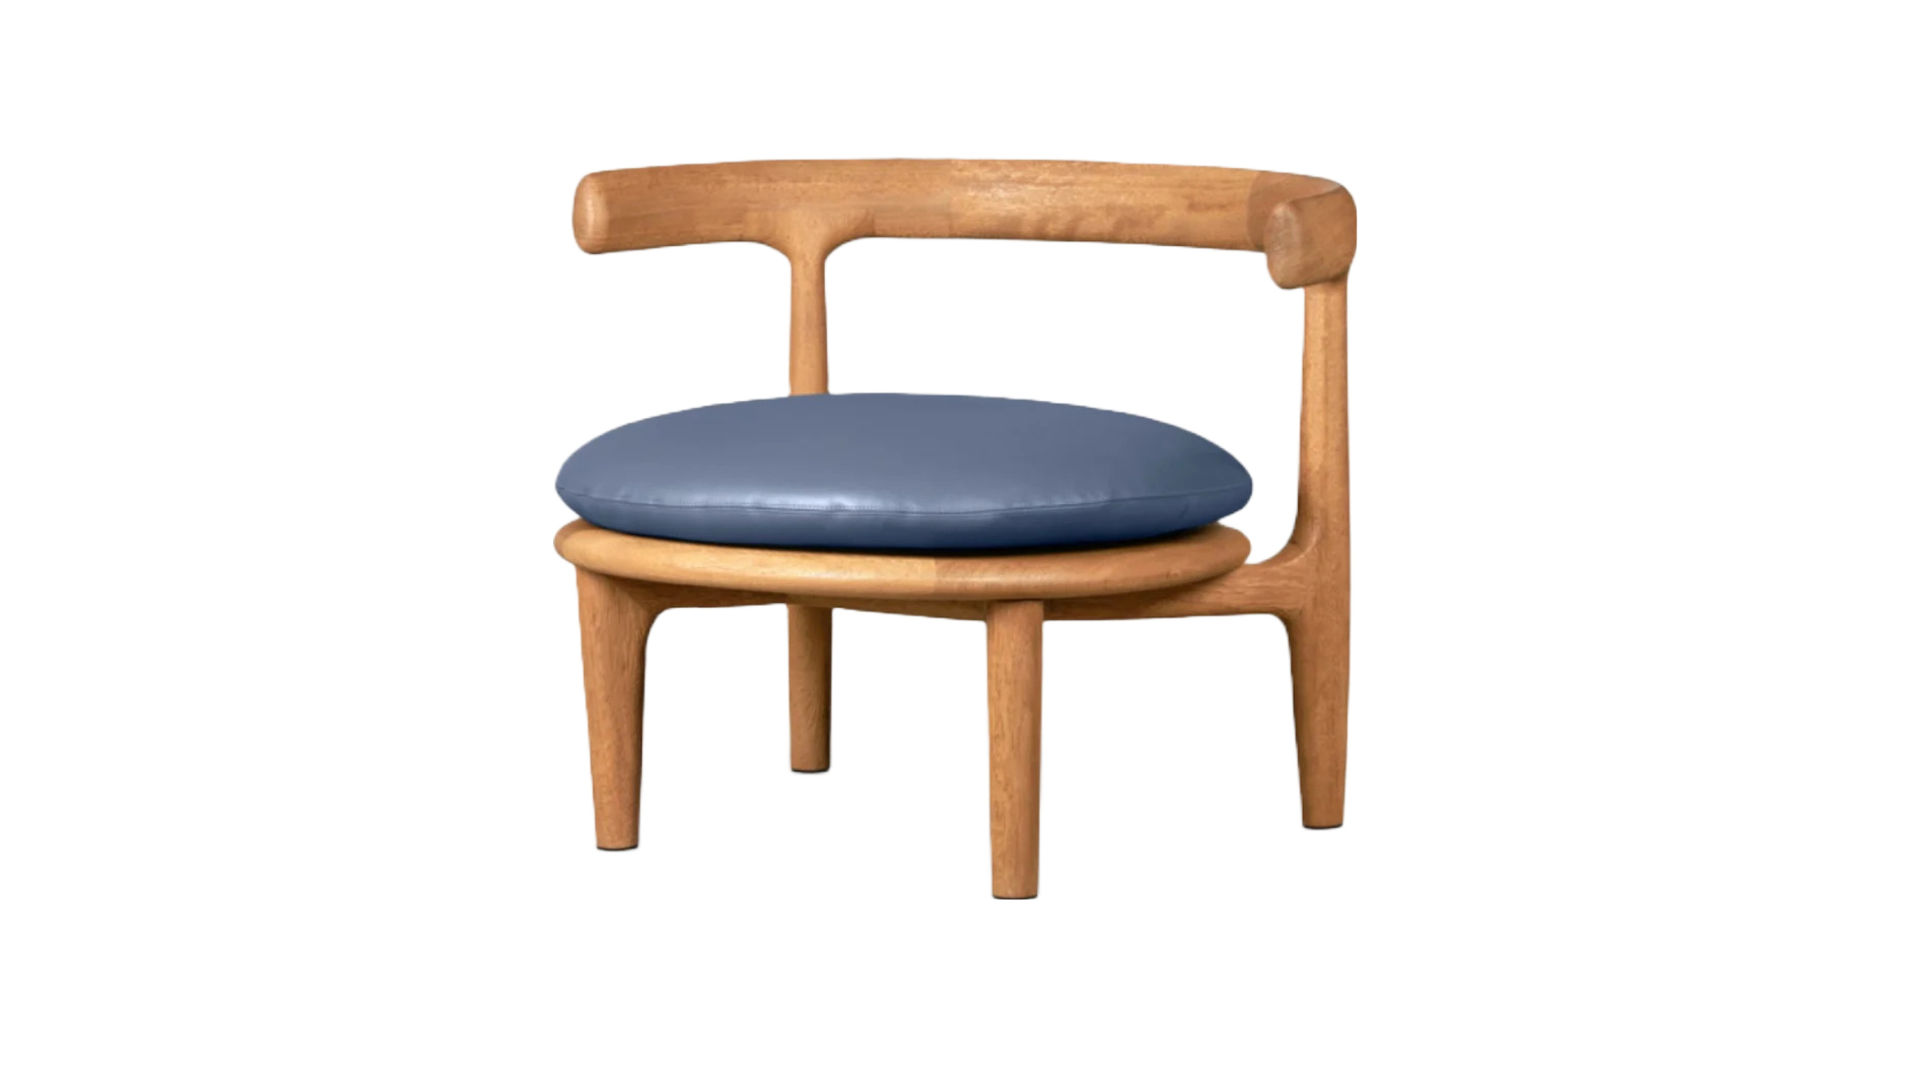 HORA Barneveld Baxter Himba fauteuil armstoel arm stoel easy chair 4.jpg